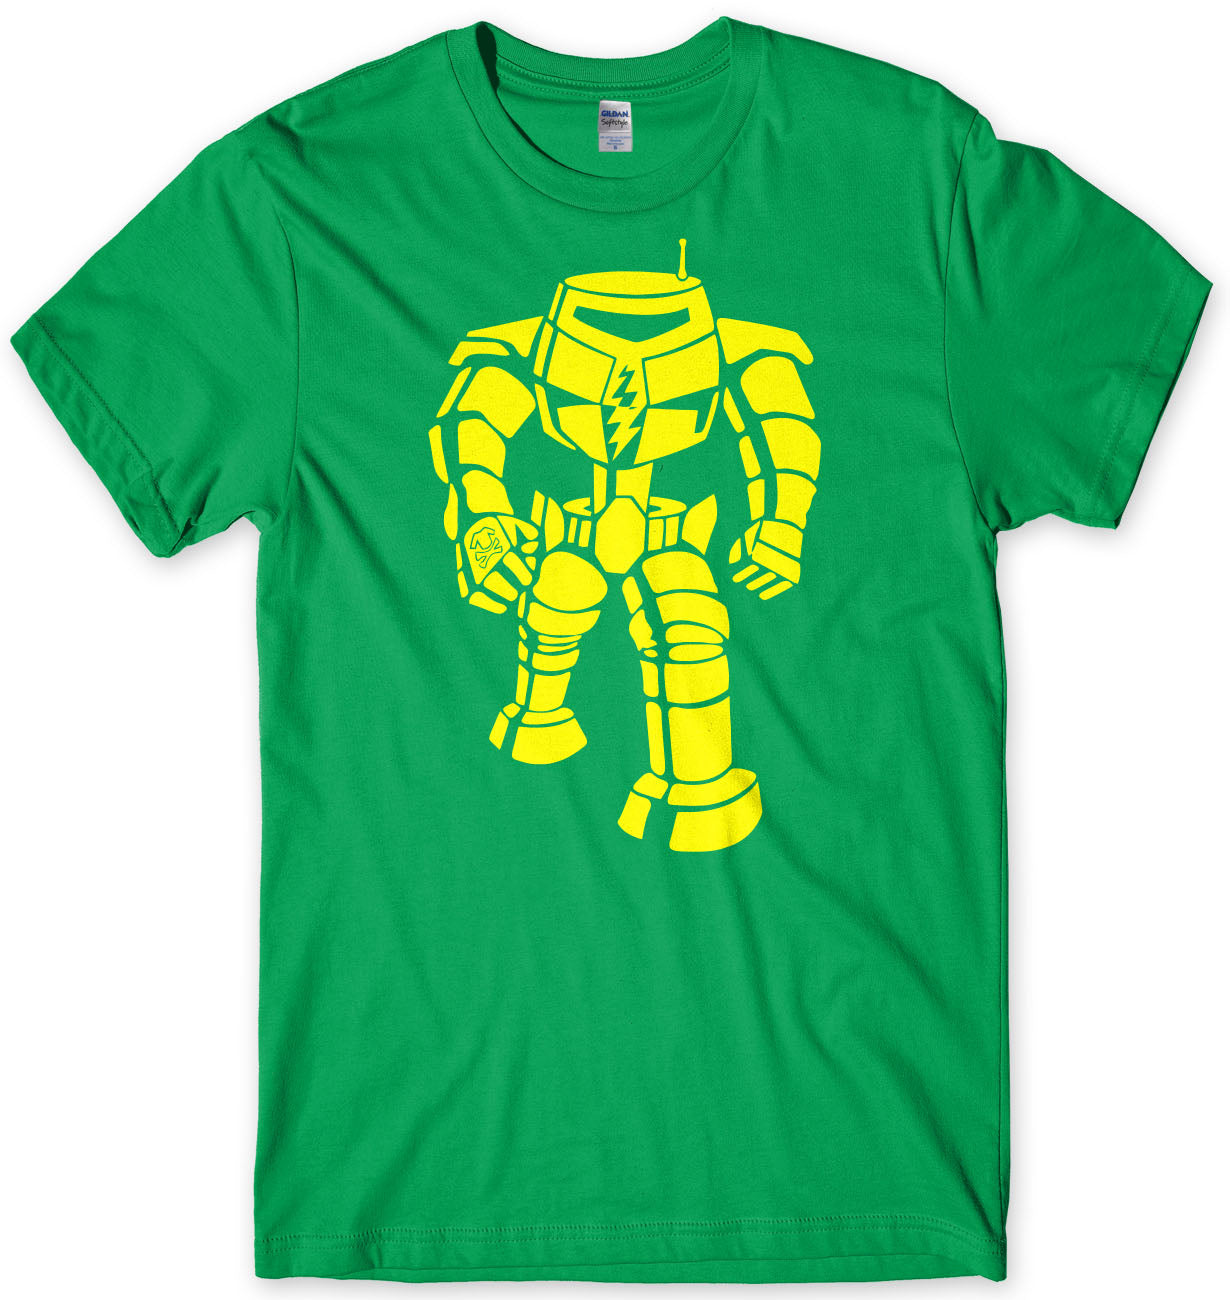 Manbot Sheldon Cooper Inspired Mens T-Shirt